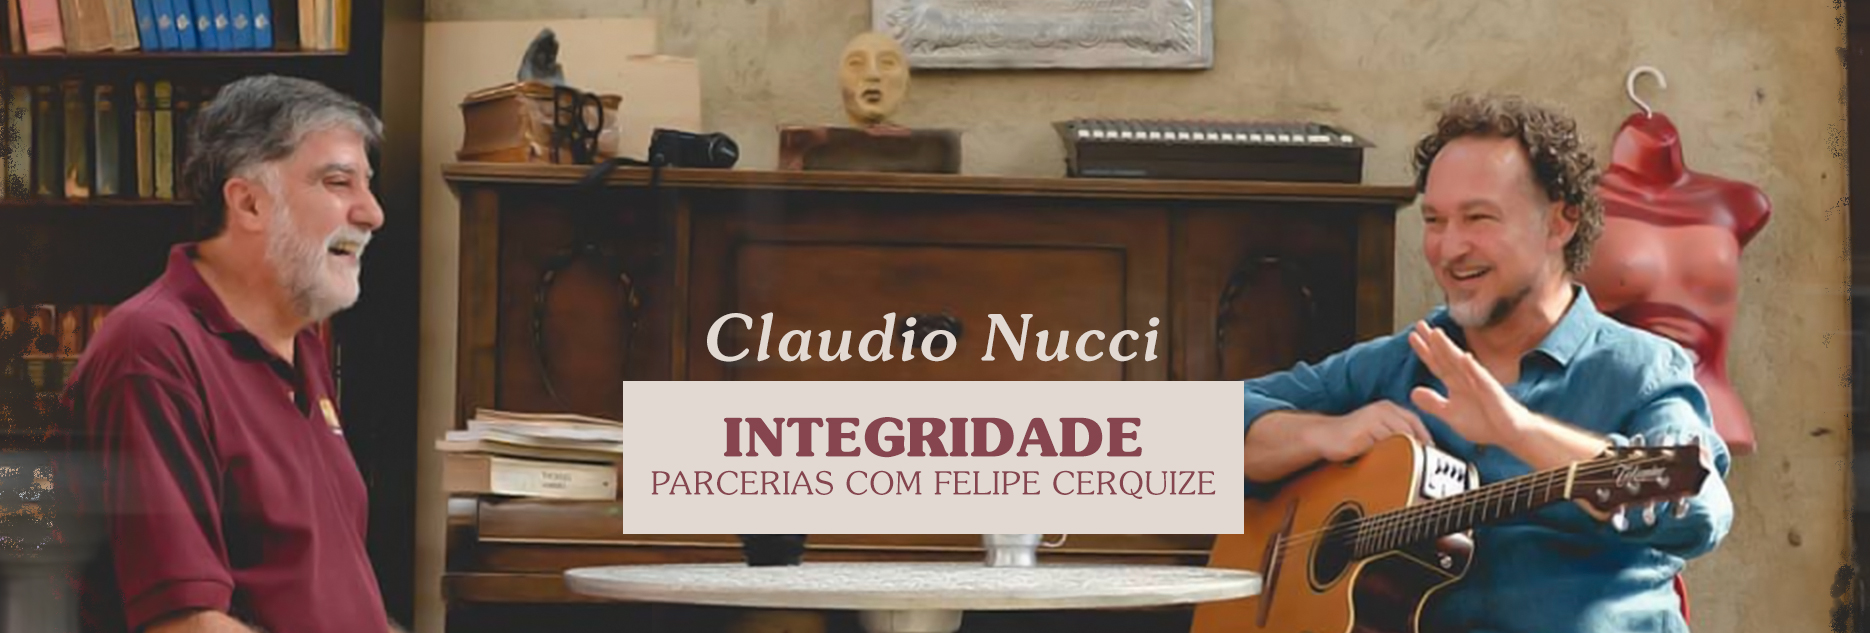 Inéditas e argutas parcerias de Claudio Nucci e Felipe Cerquize em “Integridade”